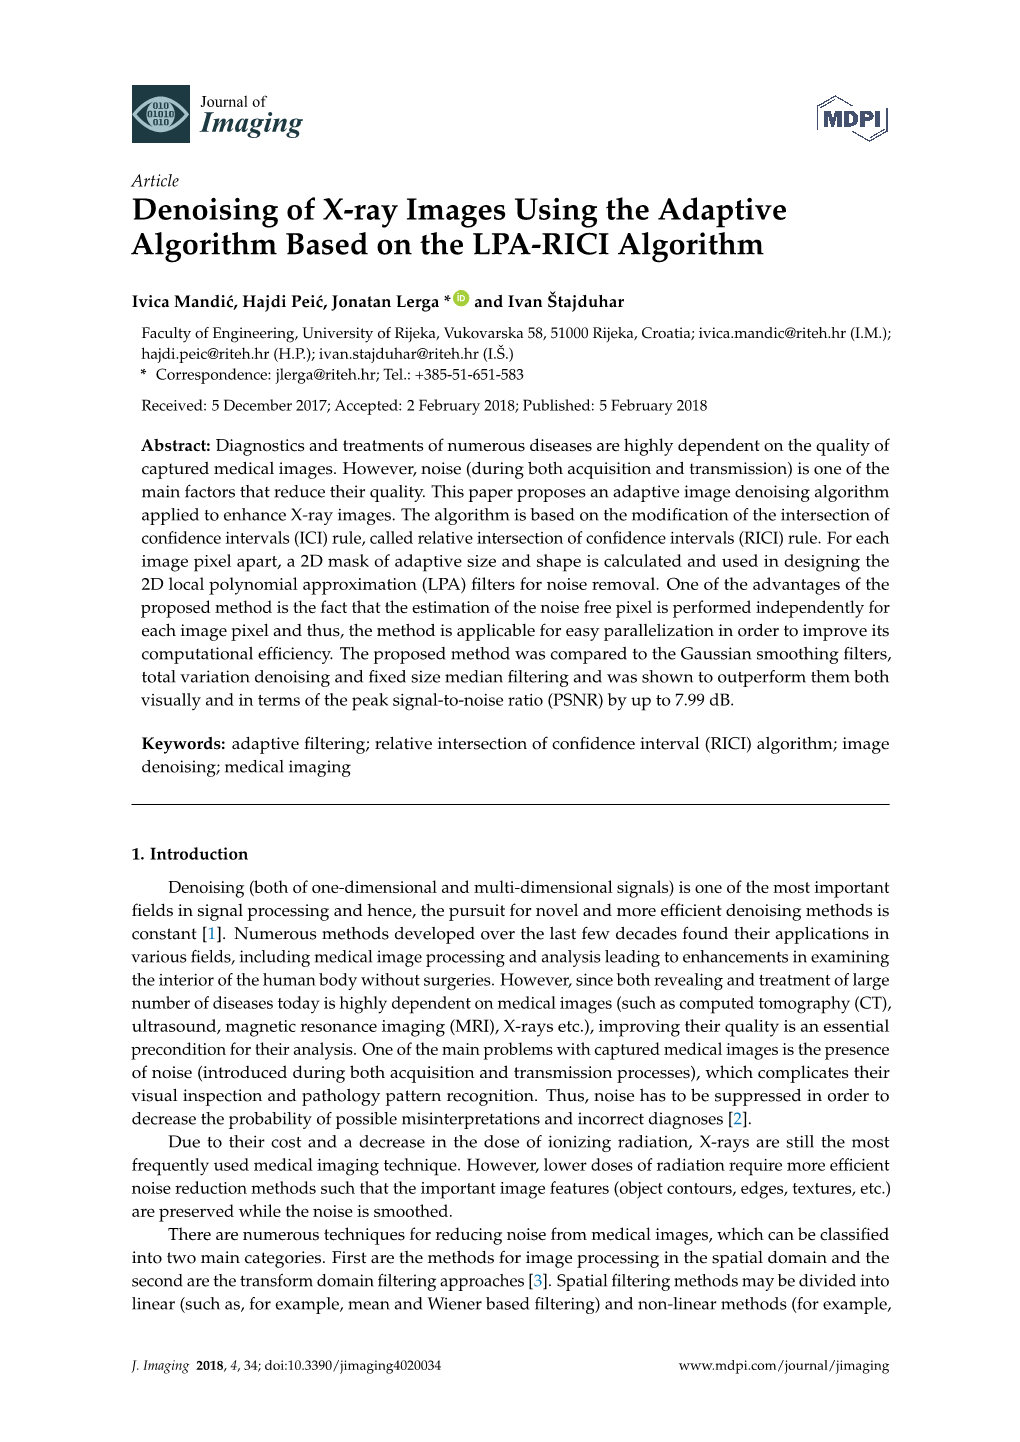 Denoising of X-Ray Images Using the Adaptive Algorithm Based on the LPA-RICI Algorithm